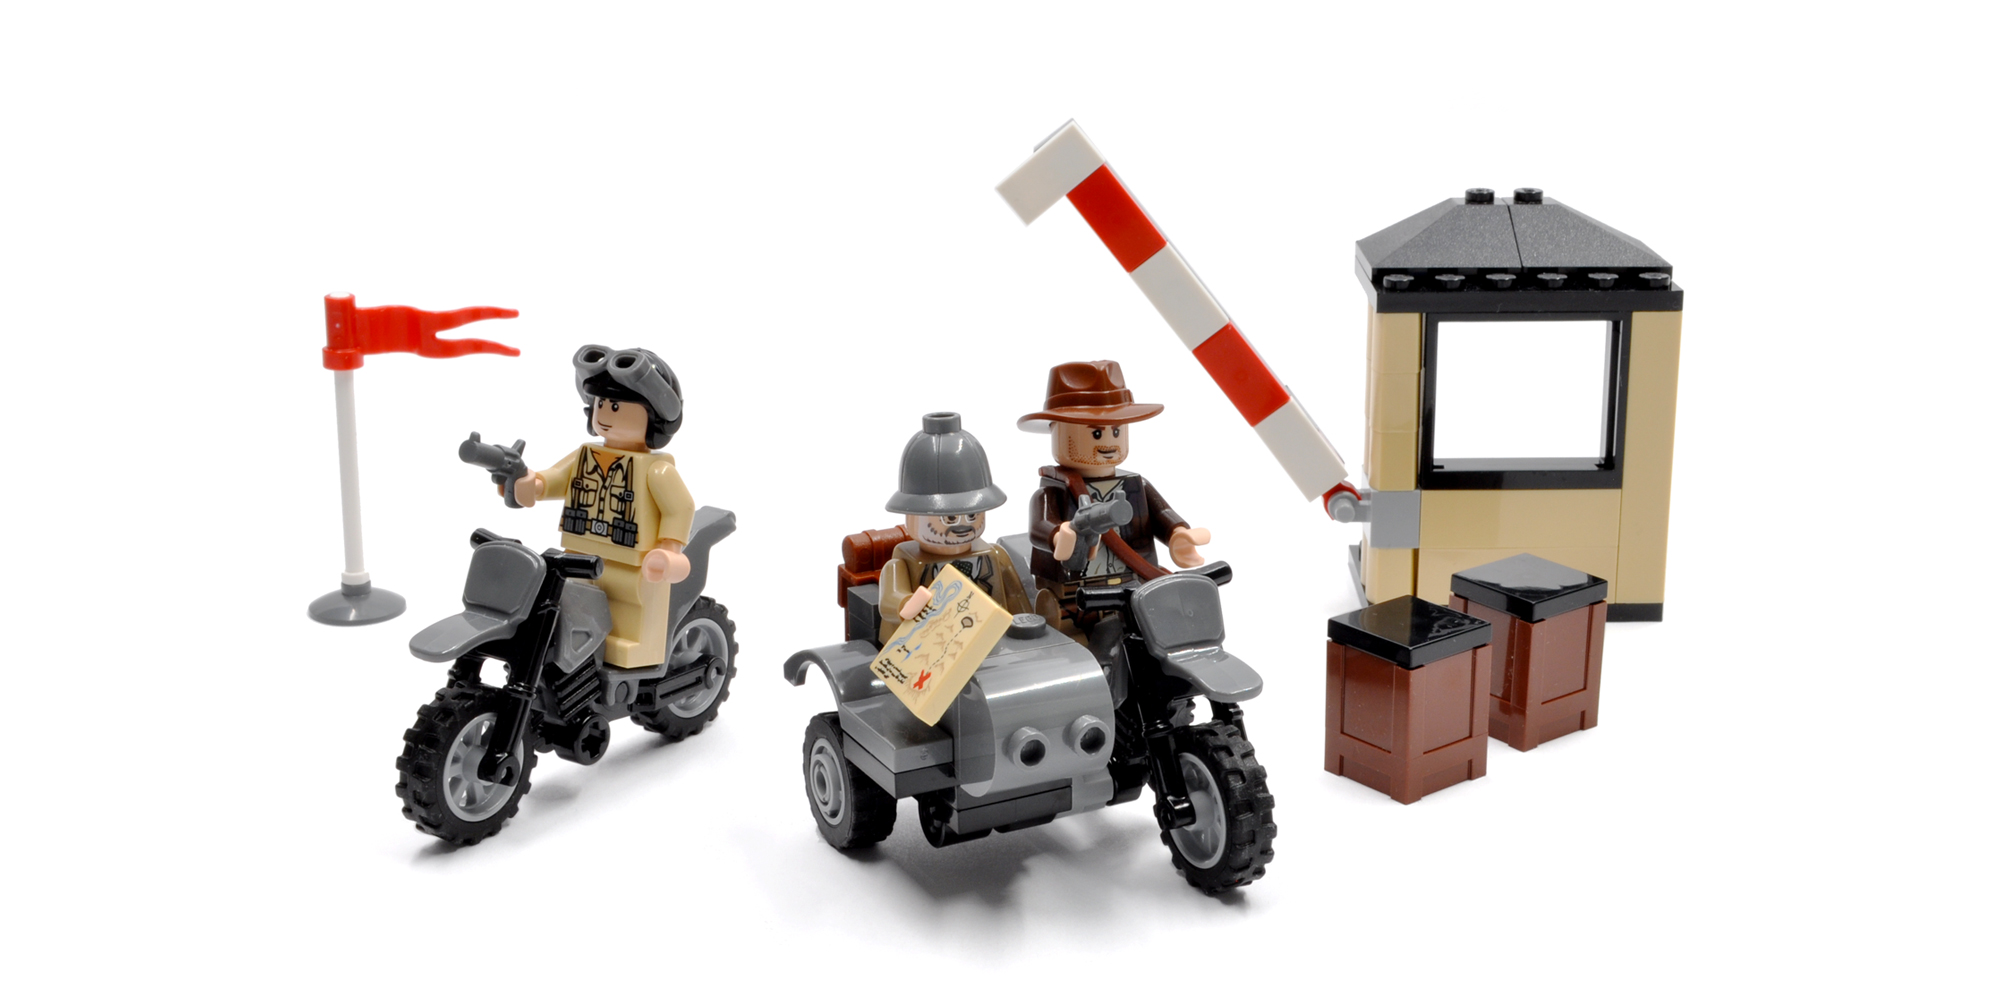 Indiana Jones Motorcycle Chase (7620)